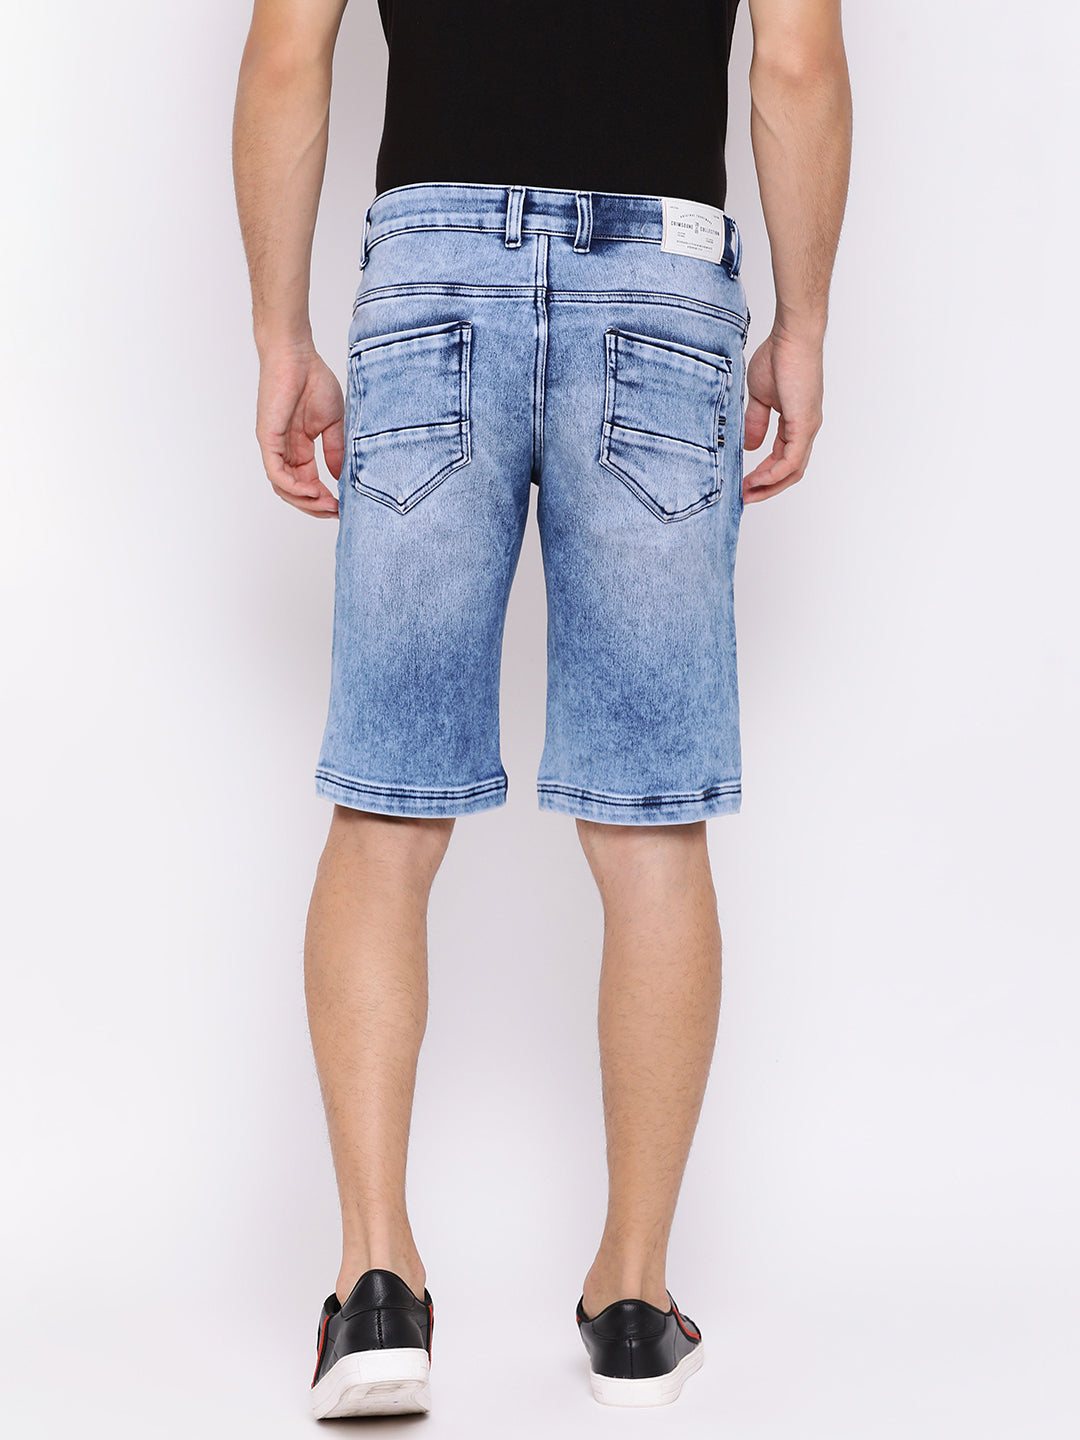 Slim Fit Denim shorts - Men Shorts